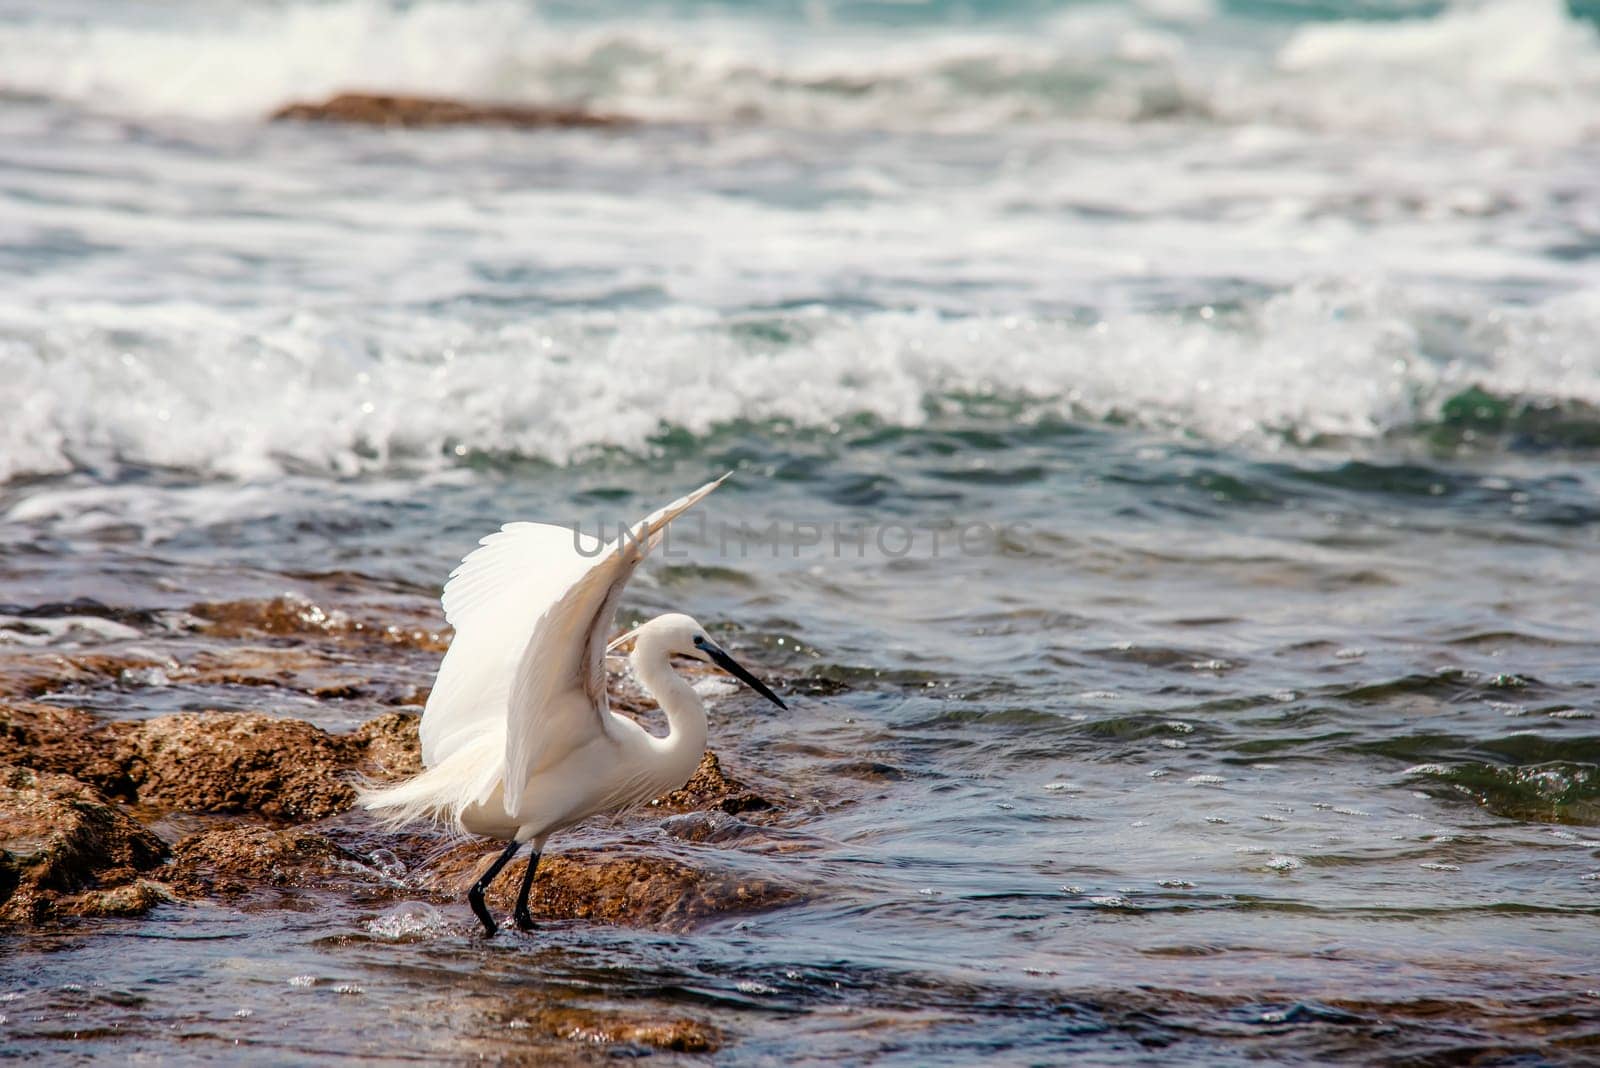 a heron walking along the seashore